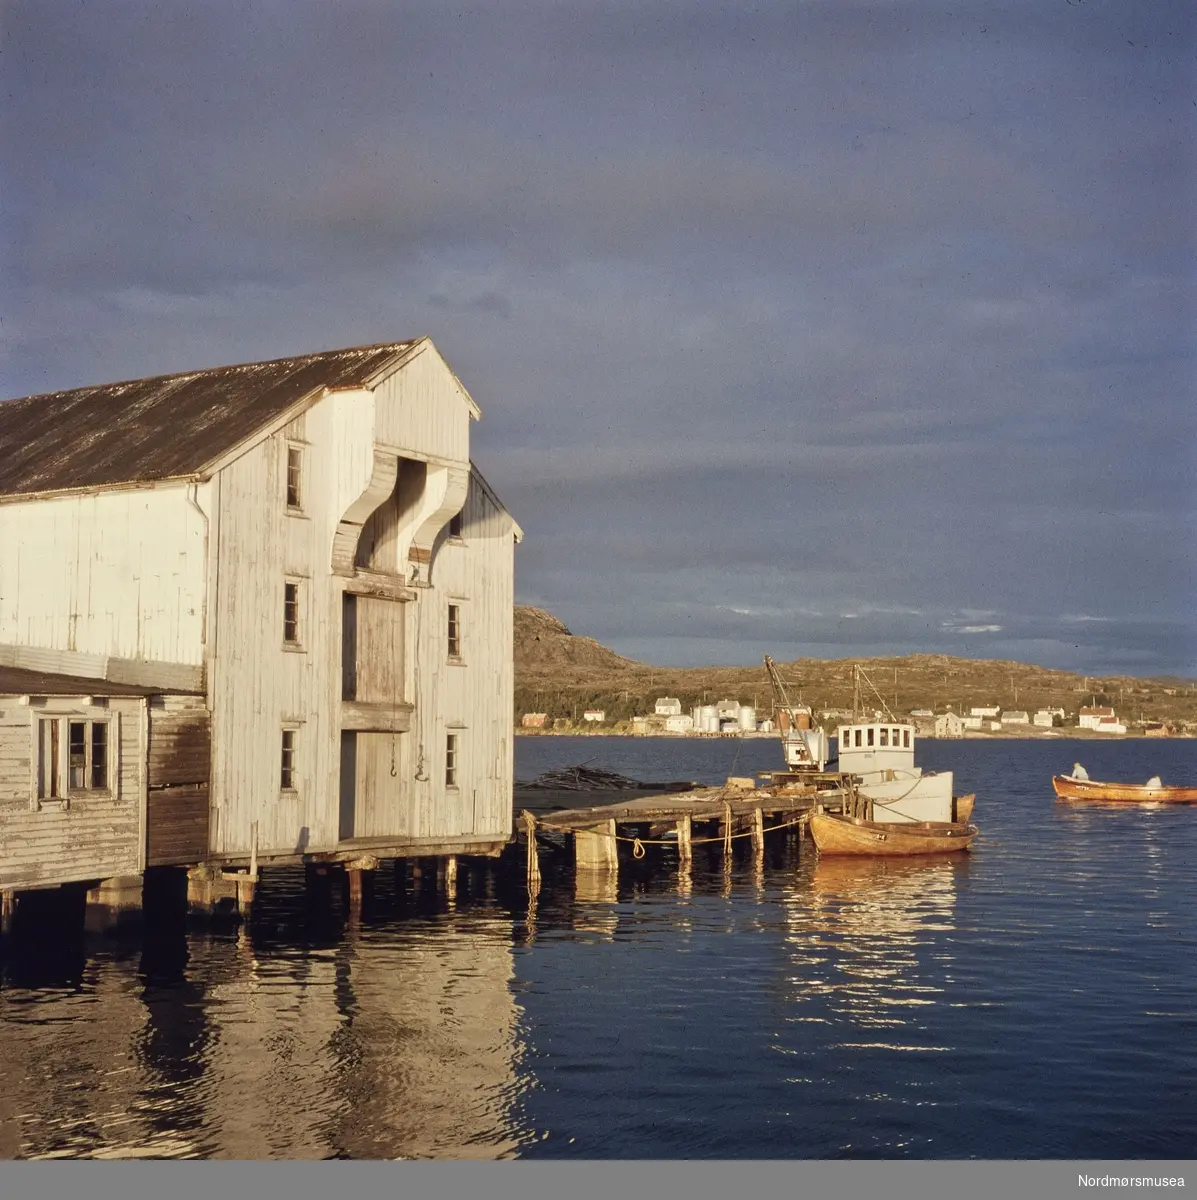 Dette er den gamle brygga til Sandvik på Skorpa. Firmaet Sandvik &amp; Øyen, Kristian Sandvik og Olaf Øyen, drev fiskemottak og røykeri der. De tok også imot krabbe som
ble rensket og eksportert. Pigghå
ble eksportert til
England. Til venstre, det lave bygget, er egnersjåa. Båten med det hvite overbygget er Sandvik og Øyens fraktebåt ";Neptun";. Gutttene på Skorpa var ofte med den ut til Grip og hentet fisk. I bakgrunnen ser vi begyggelsen og tankene på Dale. Portfoliodias fra fotograf Nils Willams sitt arkiv.

Allerede for flere tusen år tilbake har folk lagt igjen spor på Skorpa som ligger ved det nordligste innløpet til Kristiansund. Det er funnet flintredskaper og økser på de gamle boplassene. Hule hadde de også her. Senere kom sjørøverne fra Dunkerque seilende inn Dunkarsundet for å herje i byen på midten av 1500-tallet. Folk var også bosatt tidlig her ute. I 1621 kan vi se at barnefaren Seier fra Skorpa måtte møte for biskopen og Arnt Dunkersund var på denne tiden en av de første loser i byen. Under krigen 1807-1814 var det satt opp optisk telegraf på det høyeste punktet Telegrafhaugen på Skorpa. Herfra kunne de sende og motta meldinger nordover til Trondheim. Området Skorpa, Meløya, Håskjærene og Langfallet hørte til gården Strand på Gomalandet og var rikt på fugl og dun. Det ble fredlyst i 1821. Kristiansunds første bruer ble i 1911 satt opp her mellom Bentnesset, Meløya og Skorpa. Hengbrua over Meløysundet og badebassengene i Valan på Skorpa, var en attraksjon og et turmål for mange. Befolkningen her ute har hatt sitt yrke hovedsakelig til sjøen både som sjøfolk, fiskere, og i arbeid med fisk på forskjellige vis. Klippfiskberg var det både på Skorpa, Meløya og Bentnesset.

Nordmøre Museums fotosamlinger.



